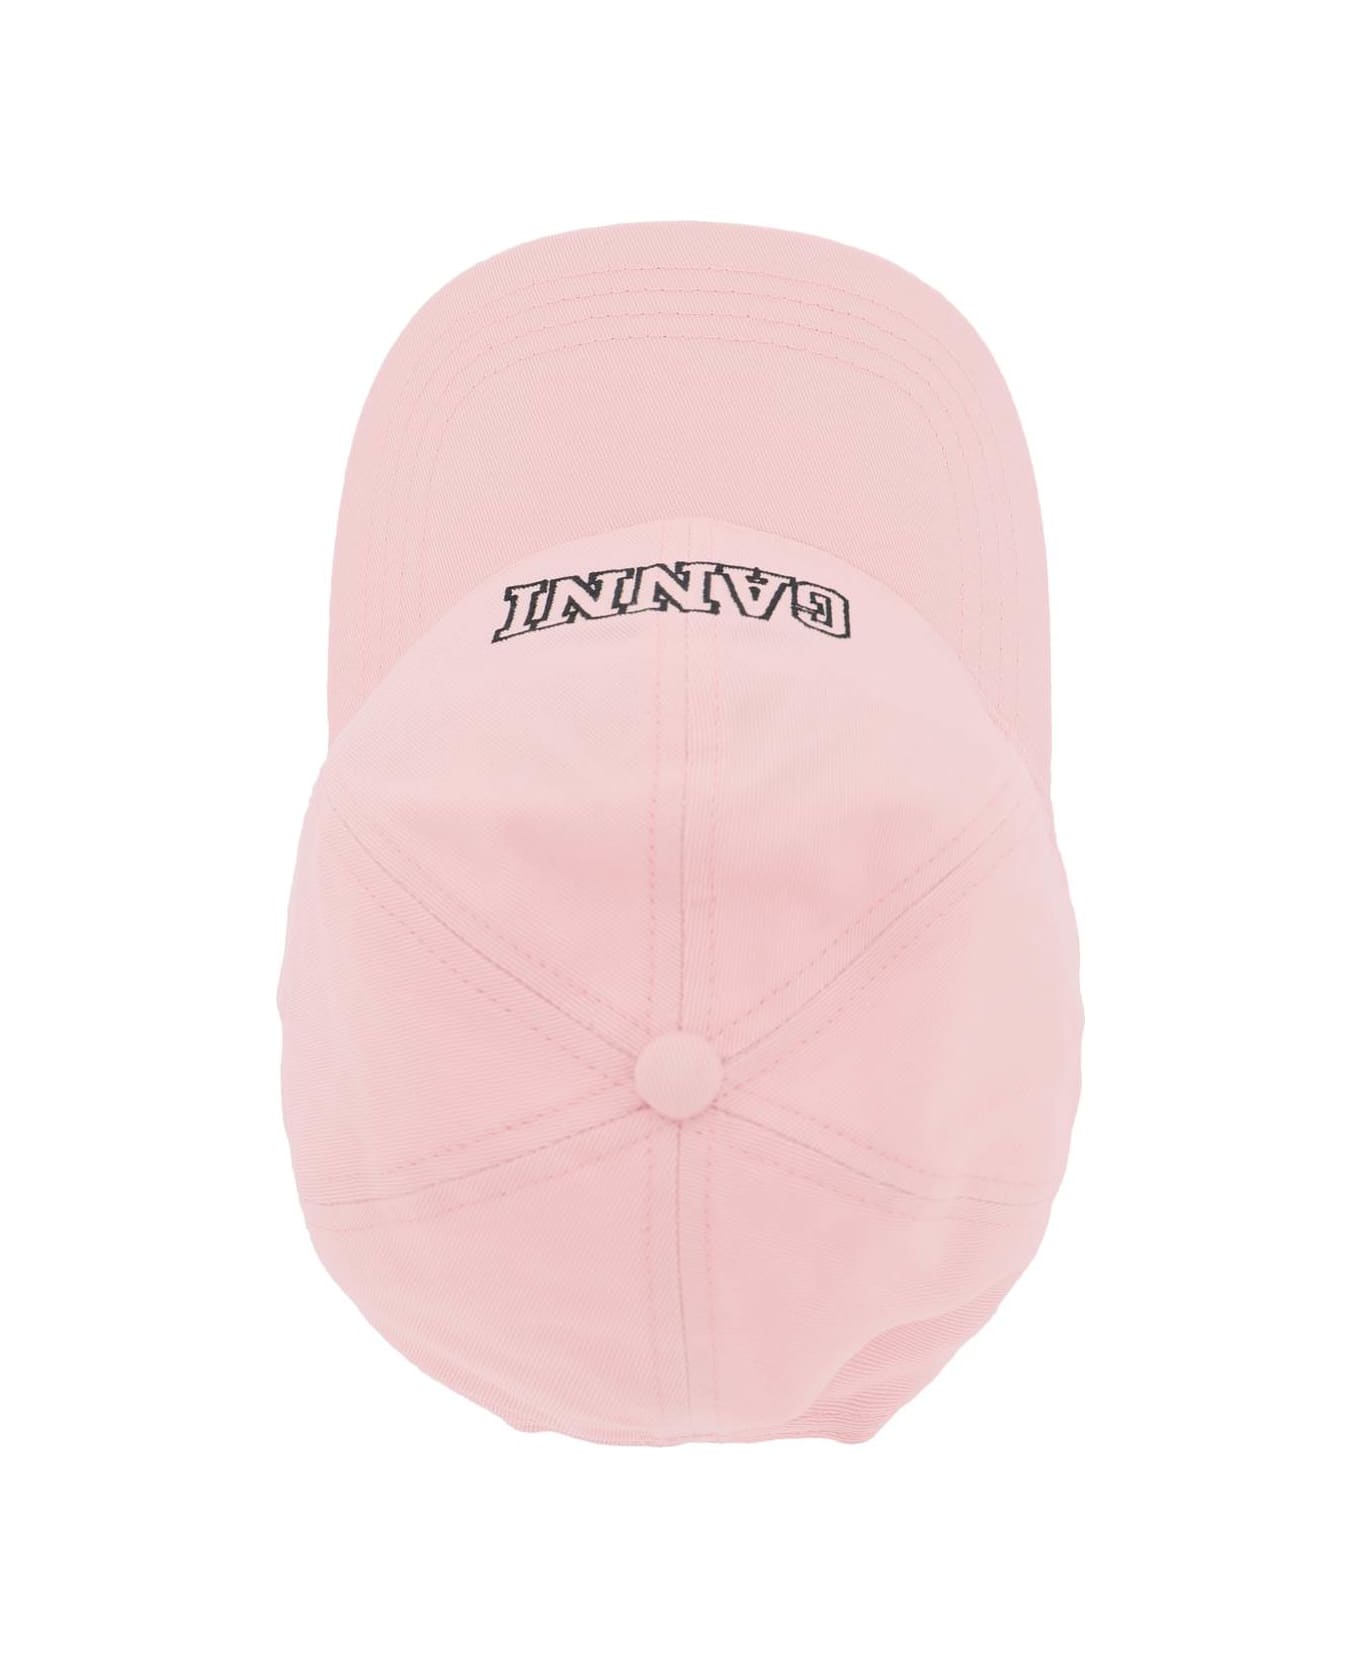 Ganni Pink Cotton Hat - SWEETLILAC